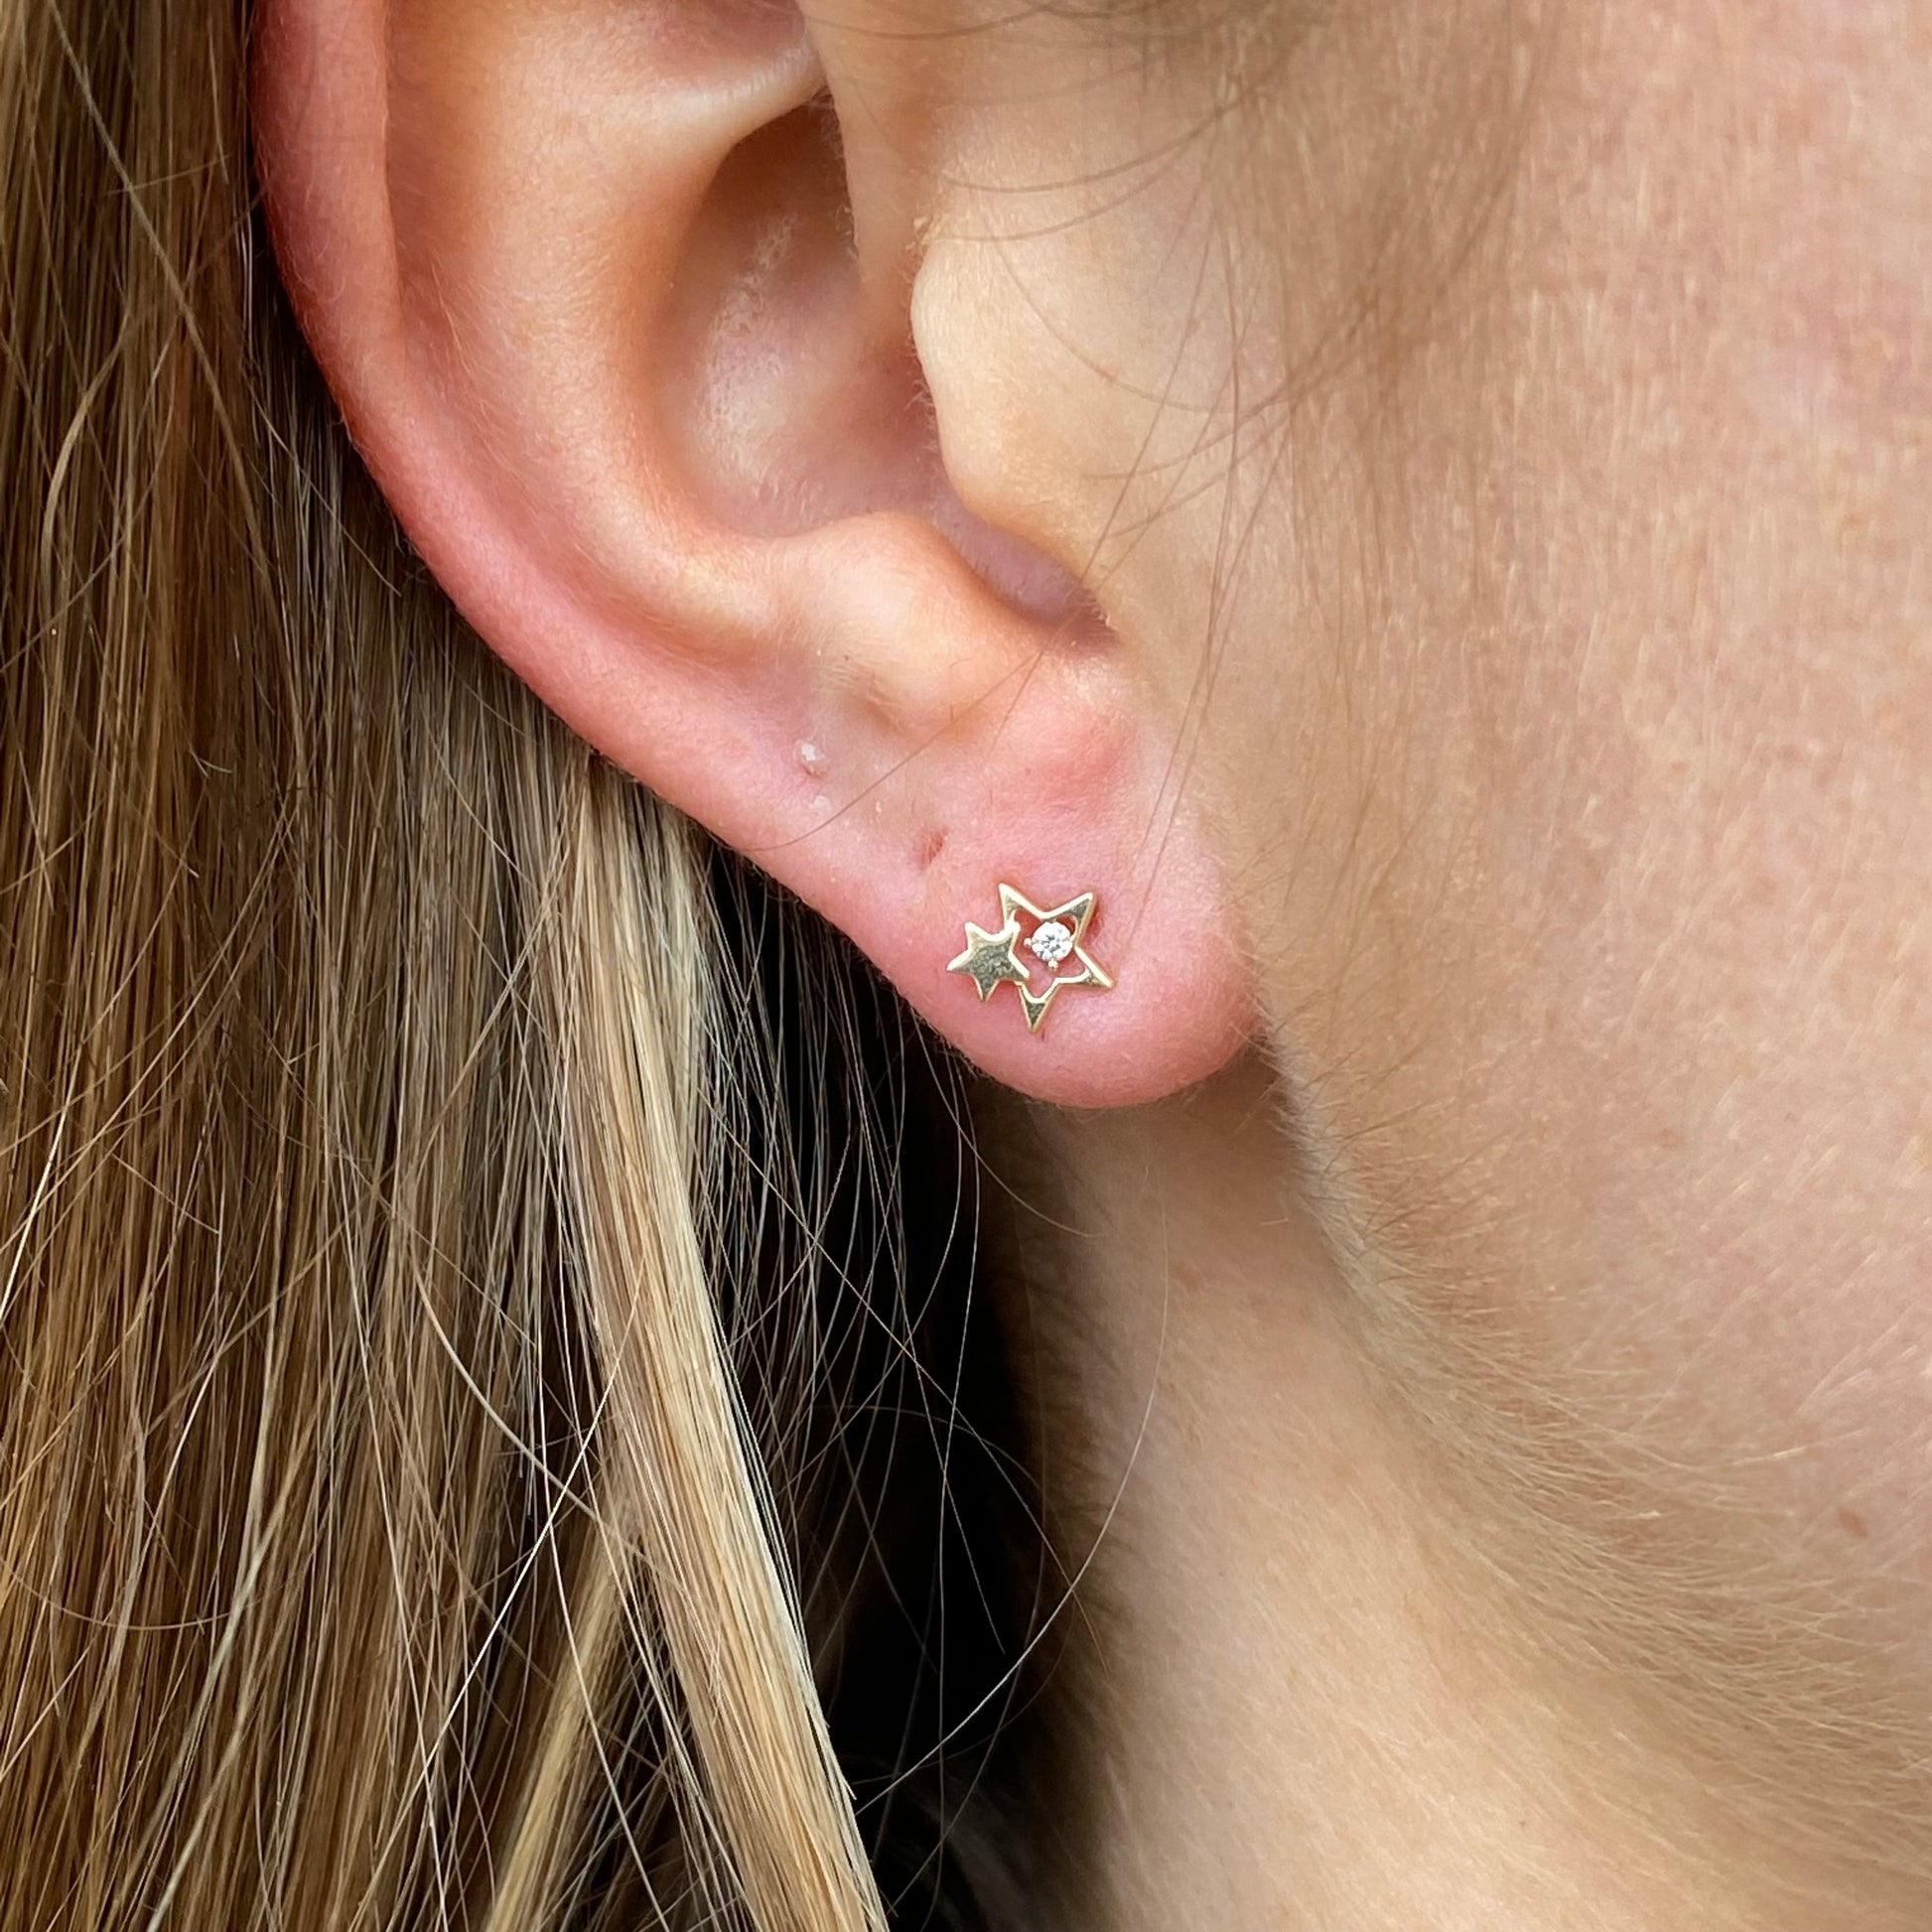 Ear Candy 9ct Gold CZ Two Star Stud Earrings - John Ross Jewellers